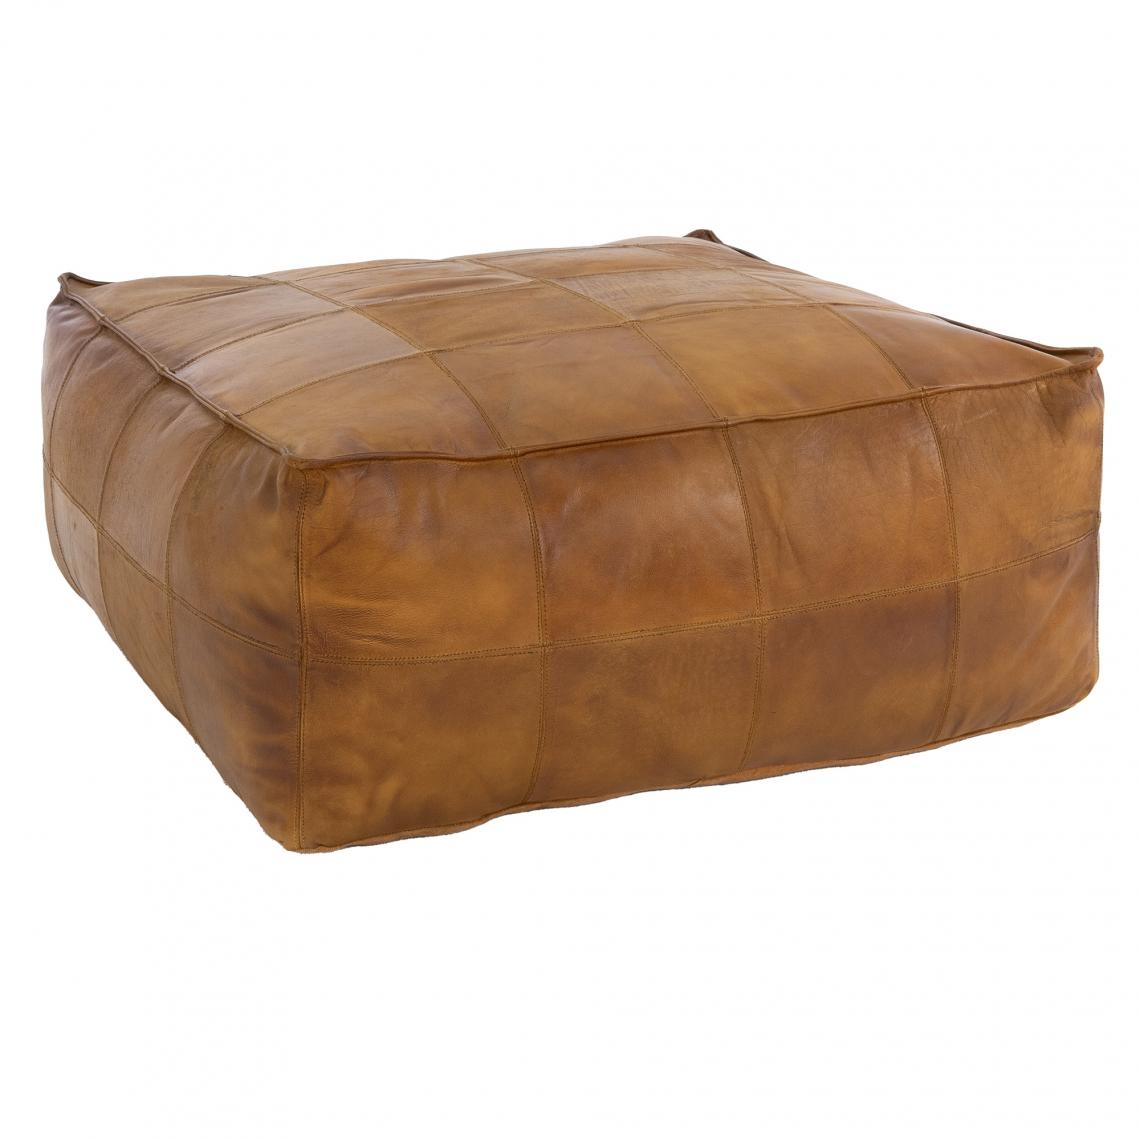 Womo-design - Tabouret pouf XXL Carlsbad marron coussin d'assise en cuir/lin salon chambre - Tabourets